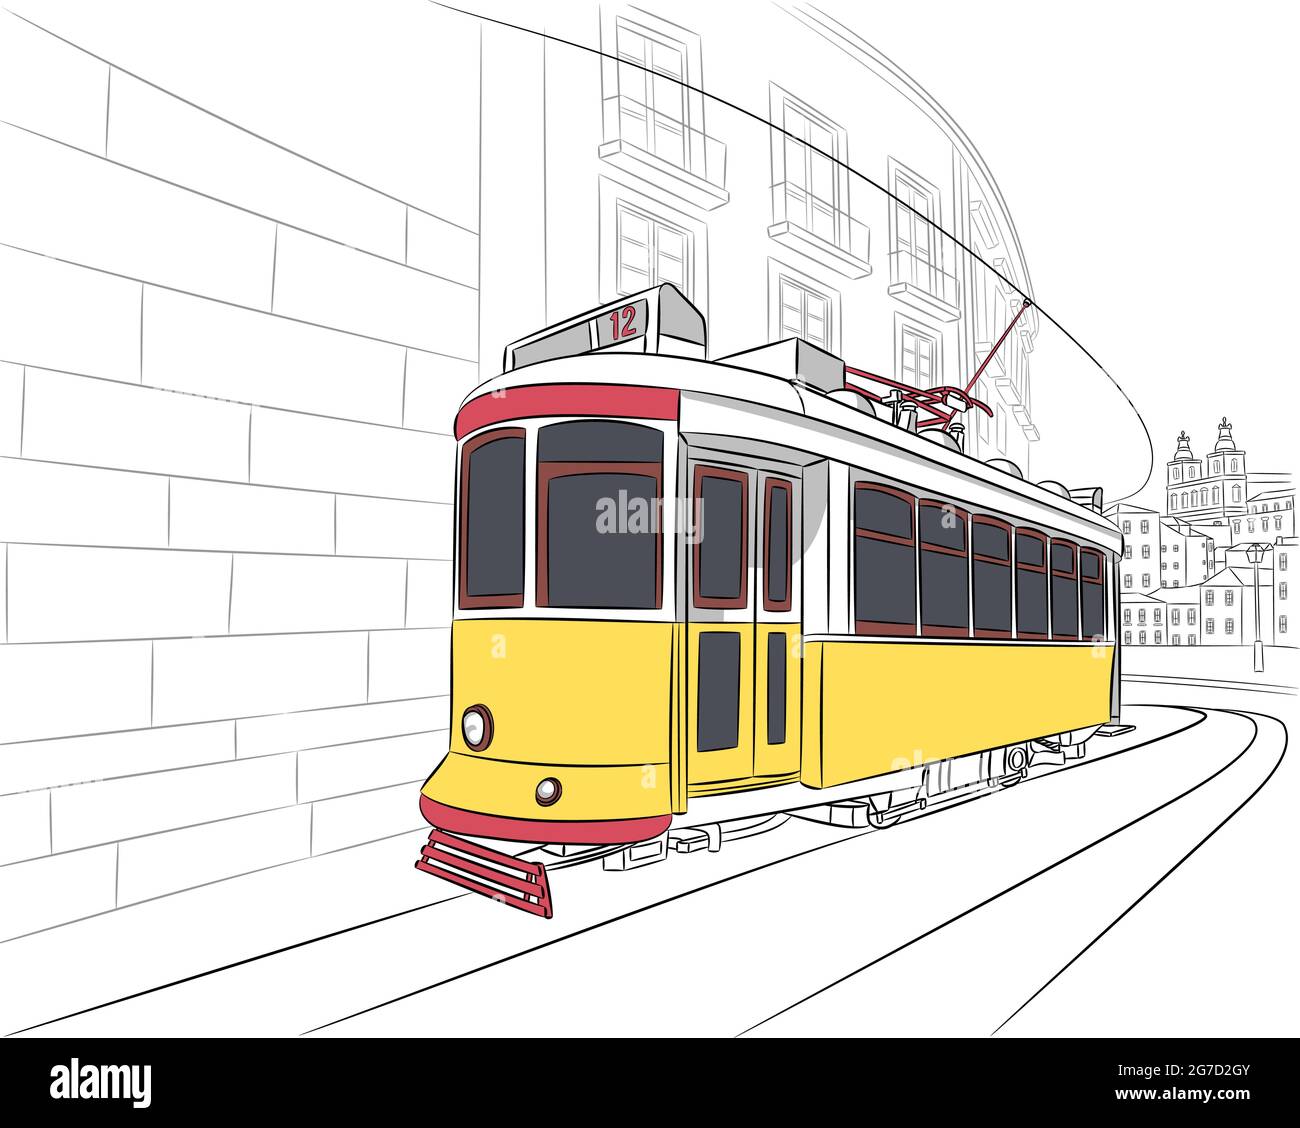 Ancien tramway touristique jaune dans le quartier d'Alfama. Lisbonne. Portugal. Illustration de Vecteur